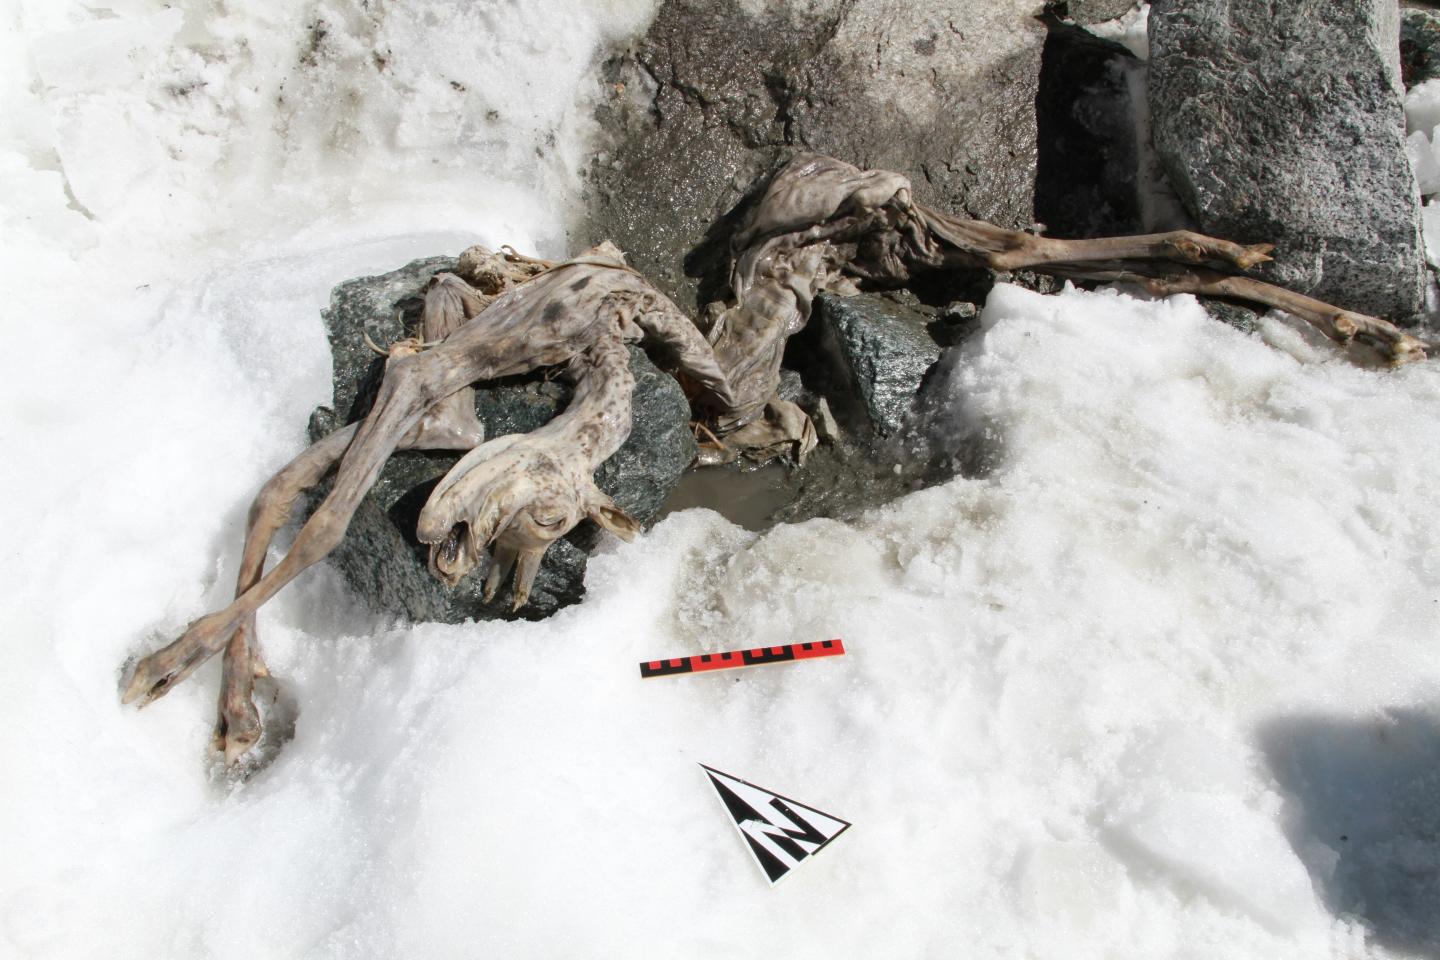 400-year-old mummified goat